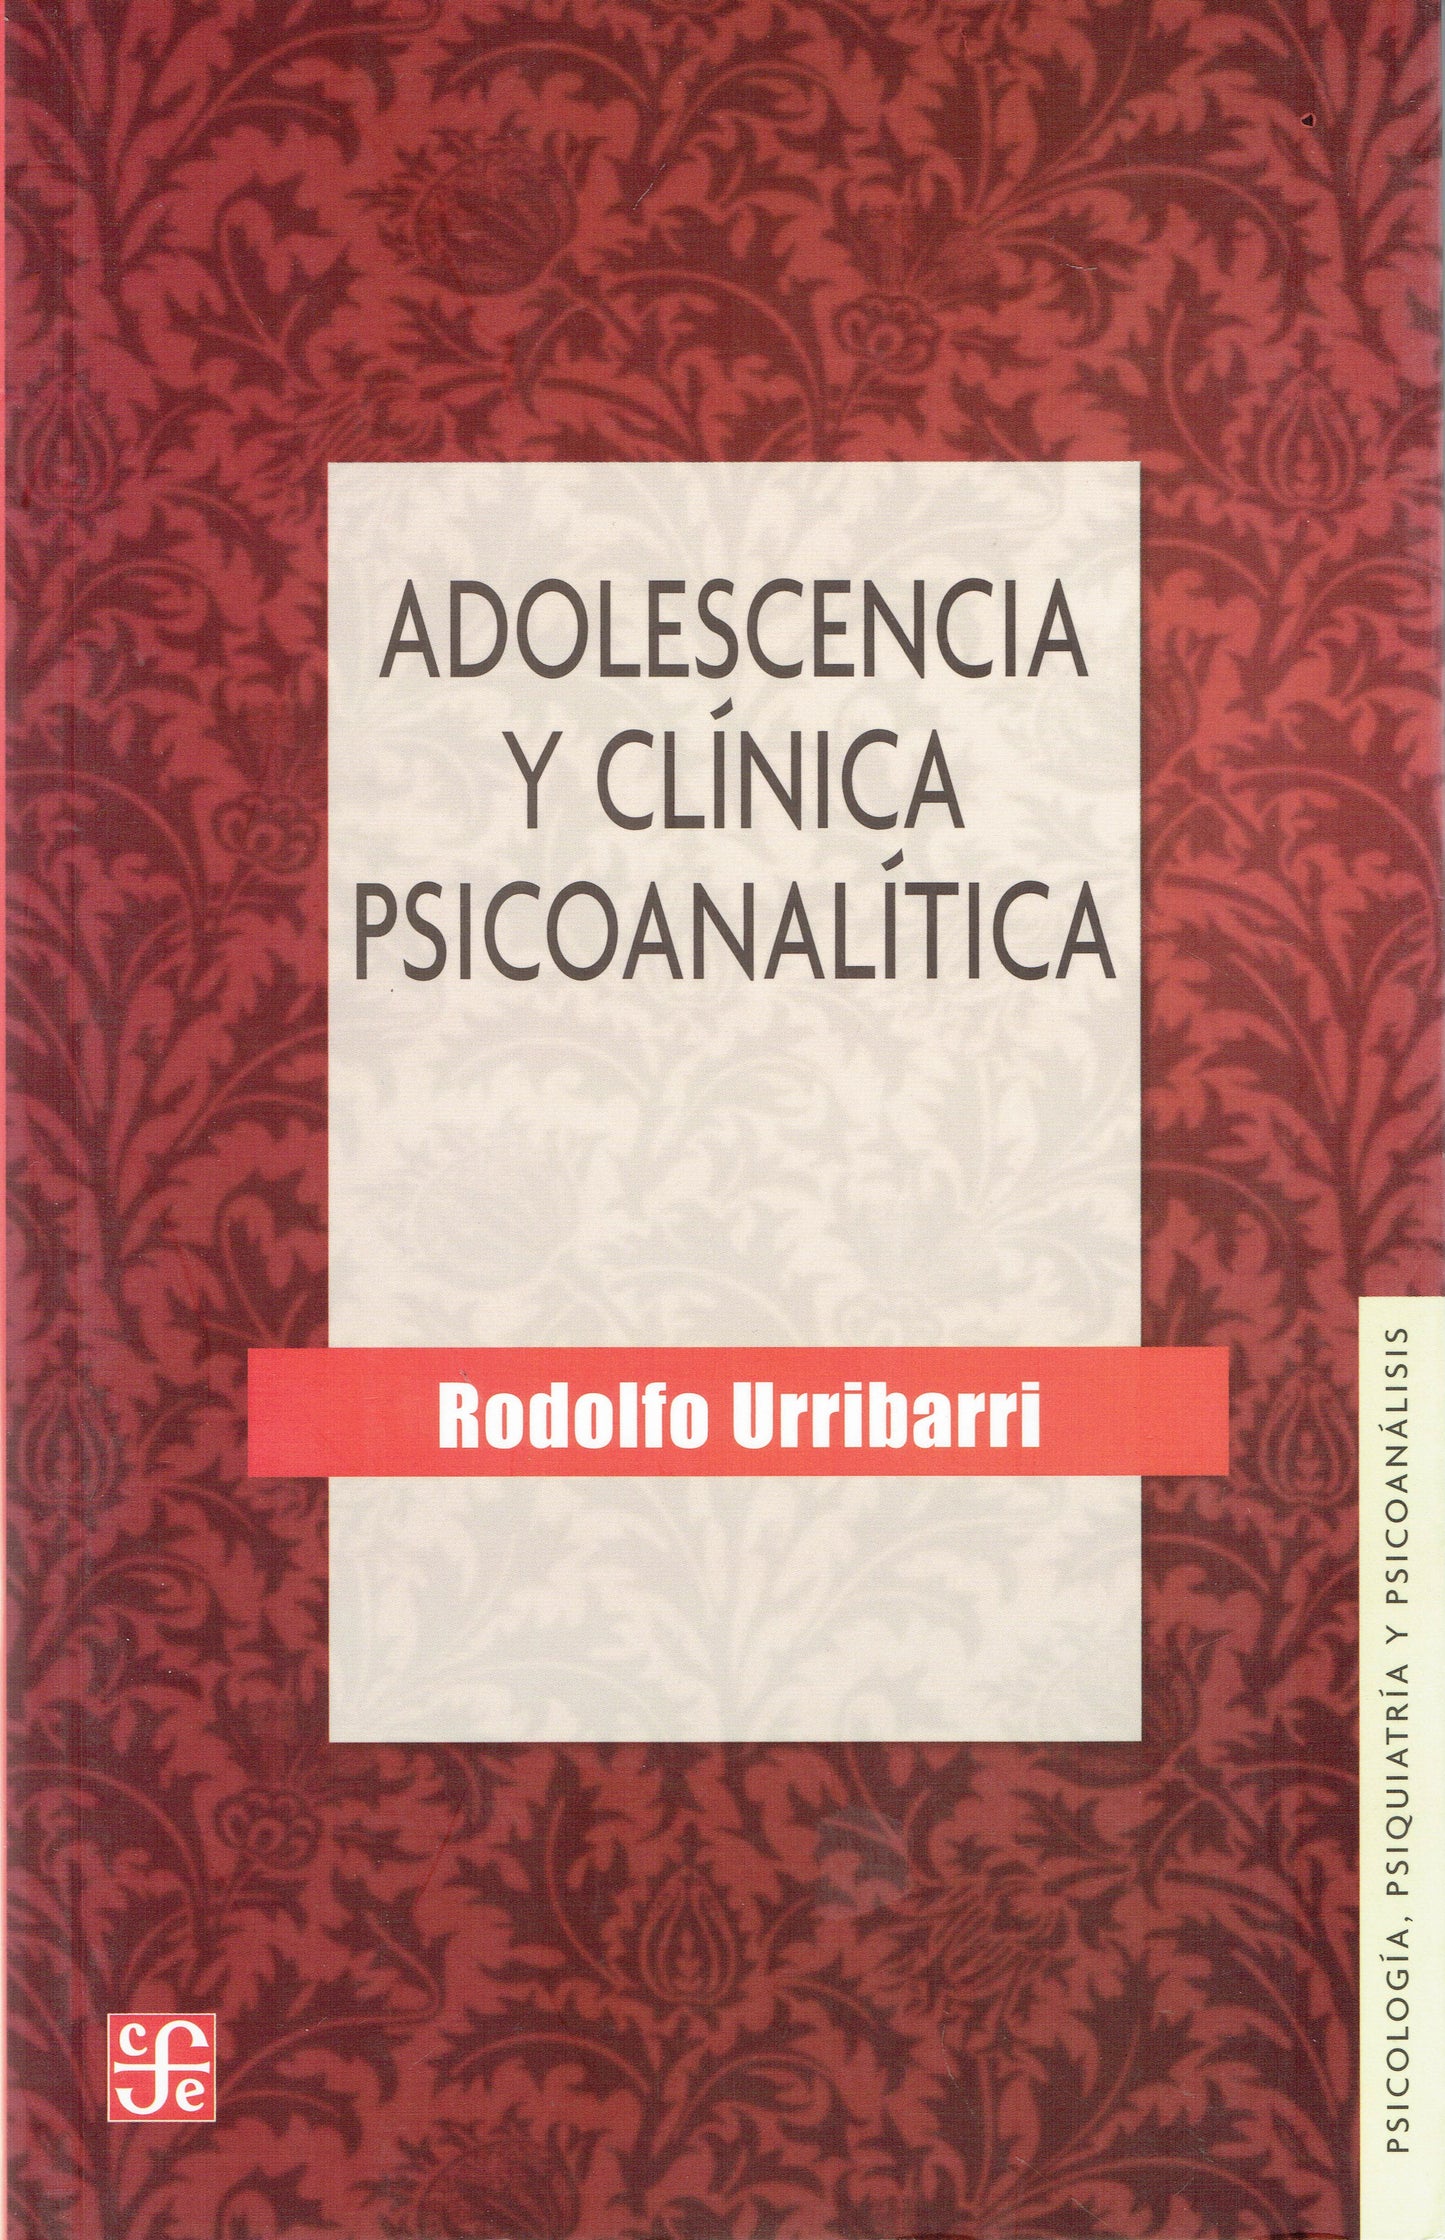 ADOLESCENCIA Y CLÍNICA PSICOANALÍTICA.